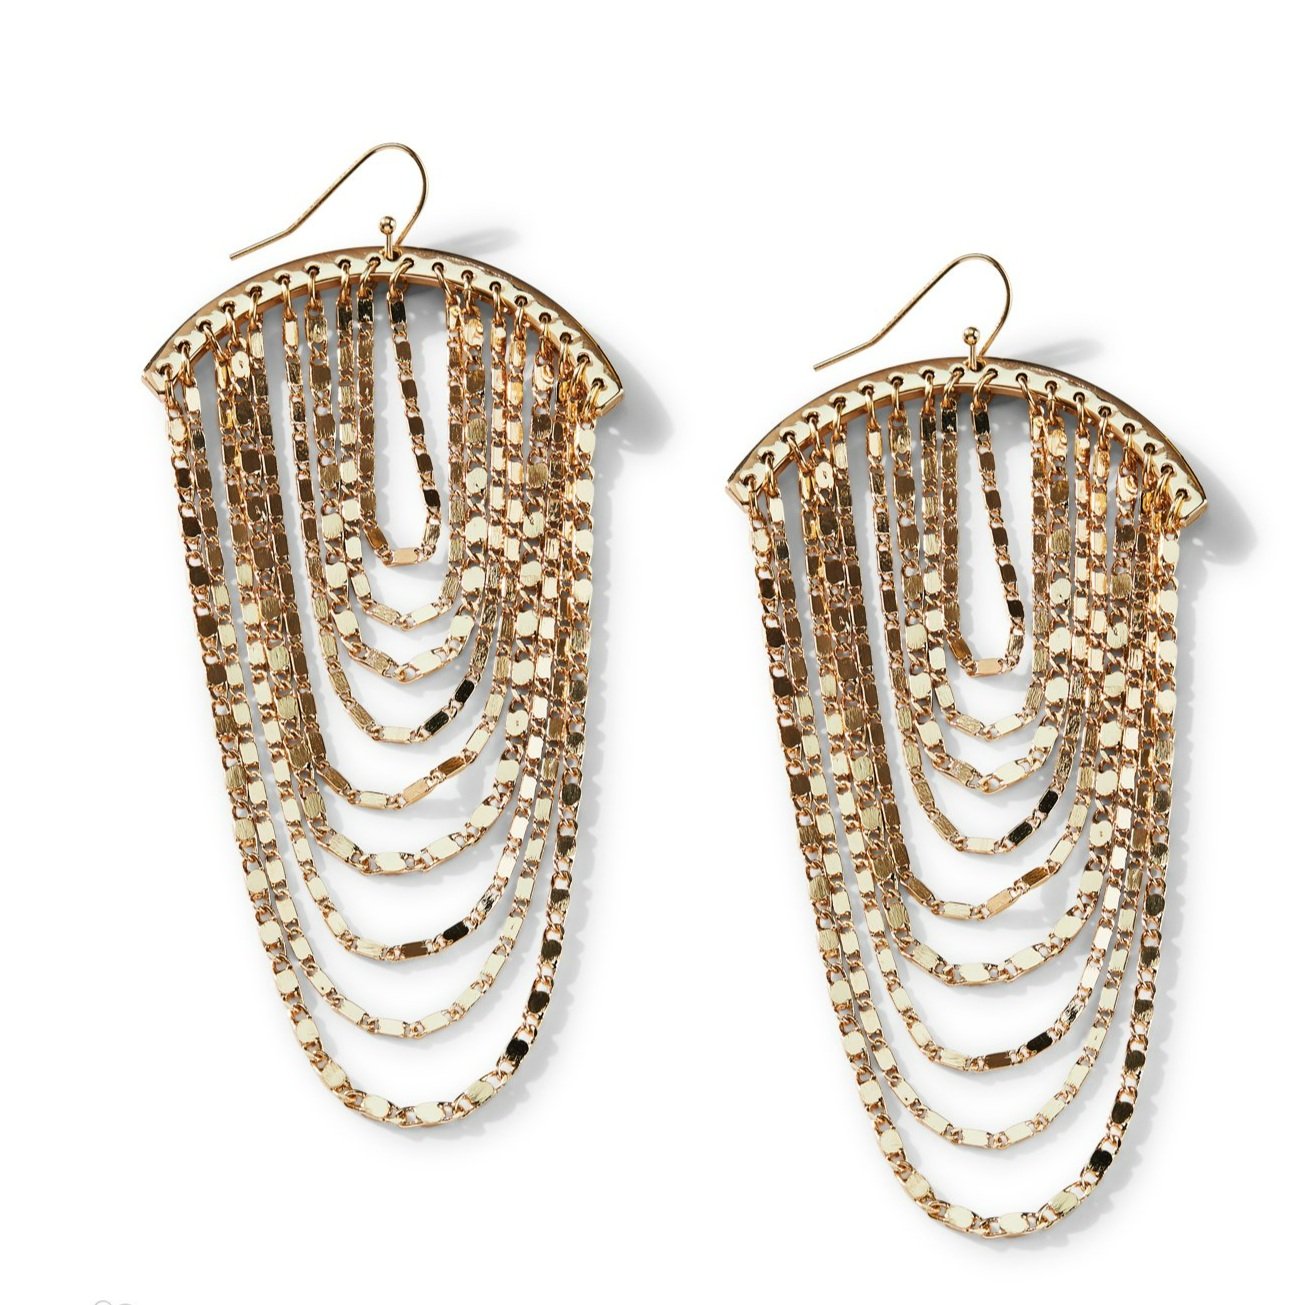 Park Lane Jewelry - Monroe Earrings